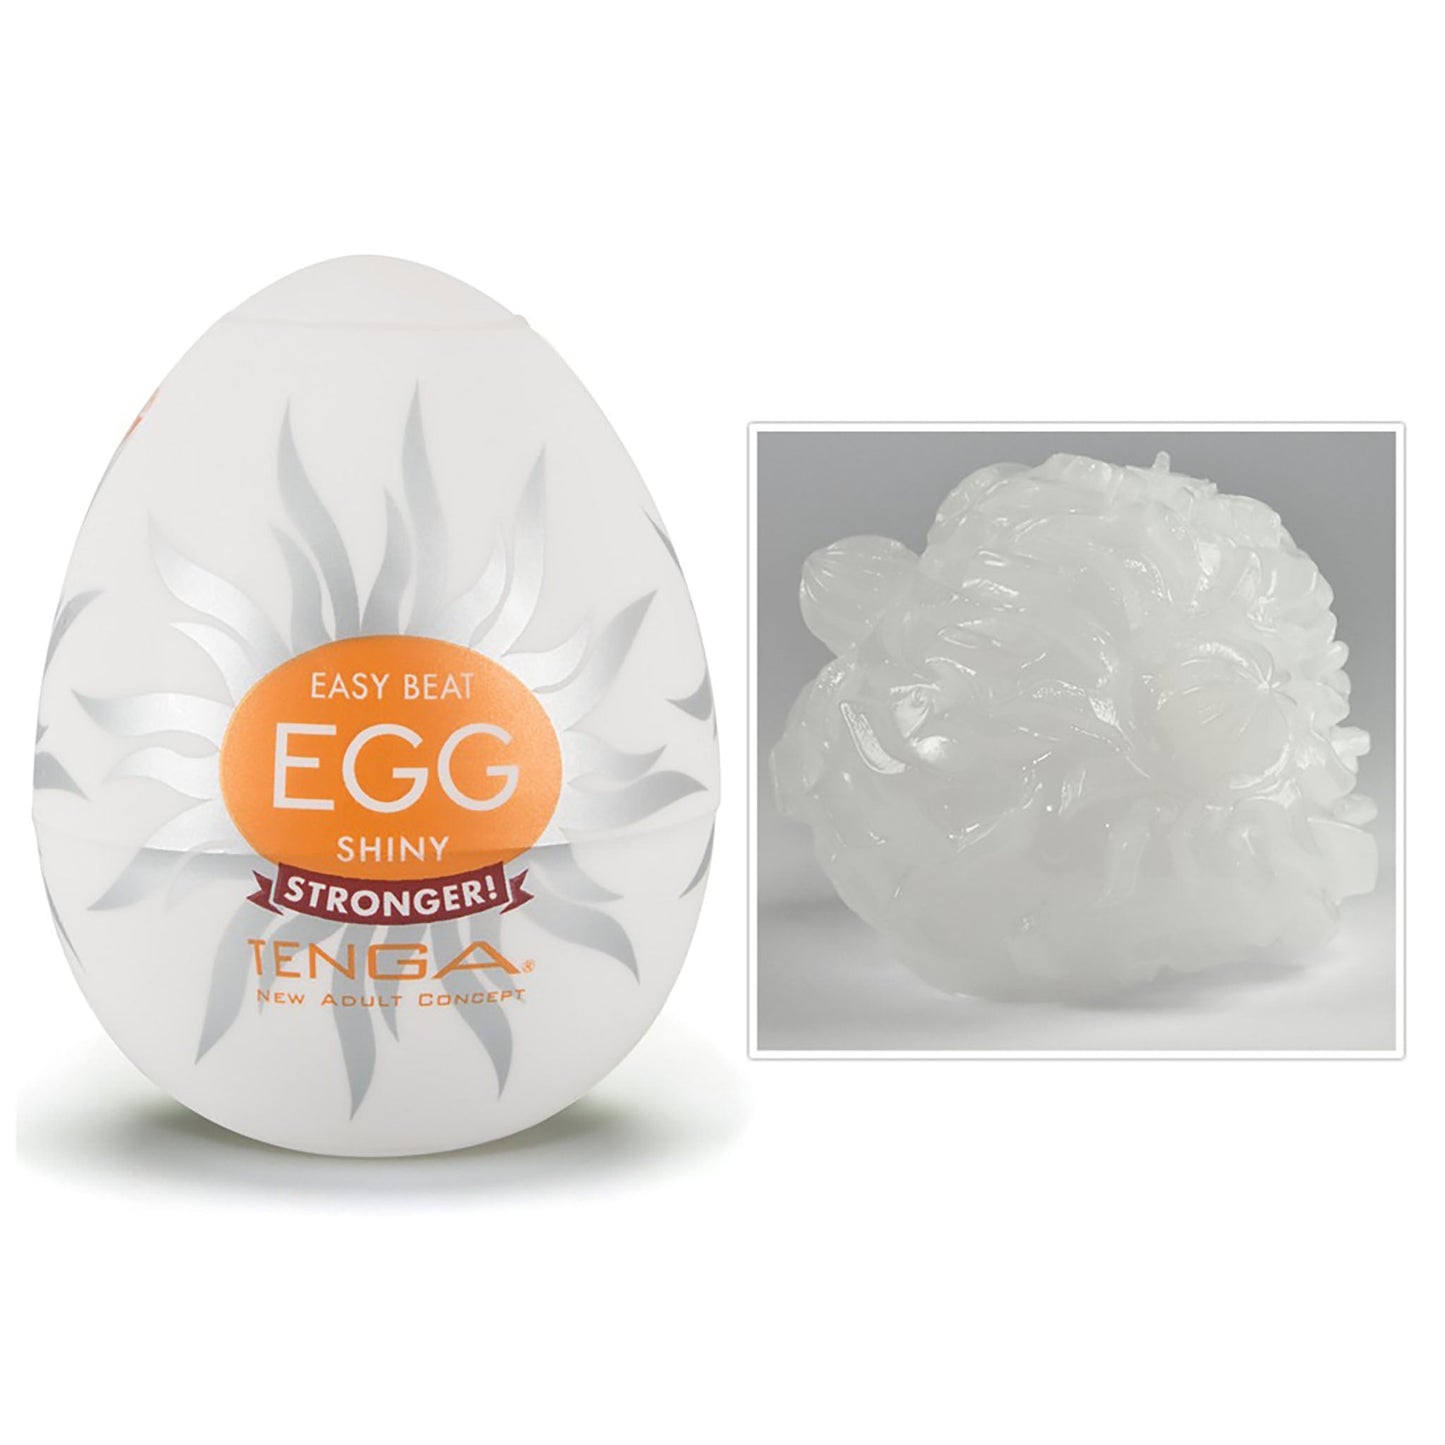 Tenga Egg Variety 2 6er Pack Eier, Easy beat egg surfer, stronger! Detail